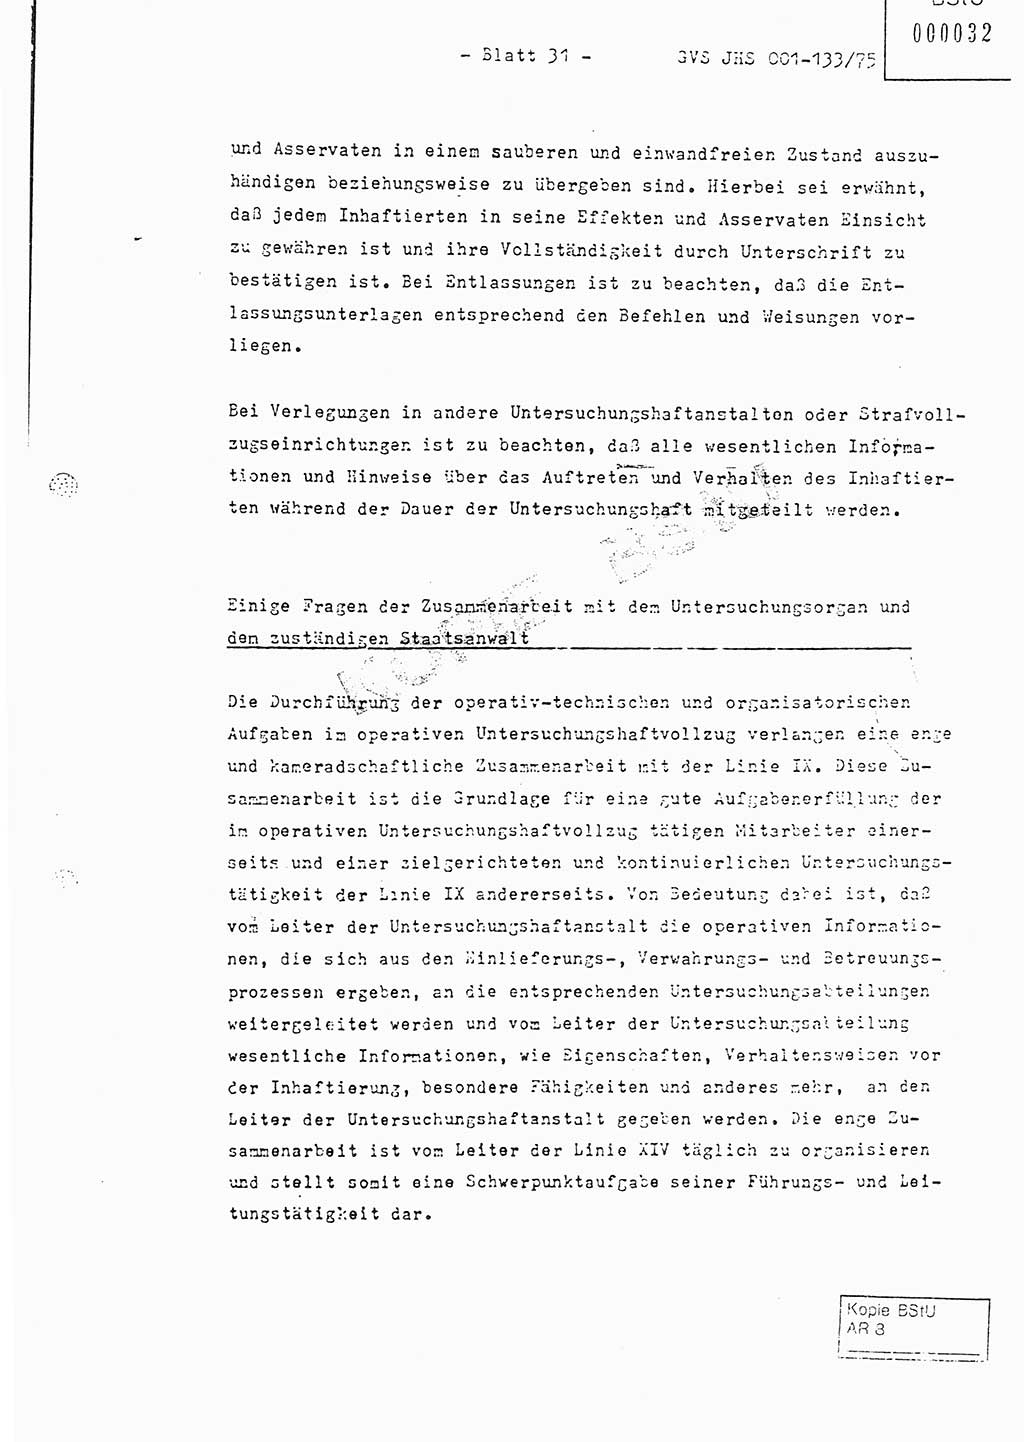 Fachschulabschlußarbeit Major Werner Braun (Abt. ⅩⅣ), Hauptmann Klaus Zeiß (Abt. ⅩⅣ), Ministerium für Staatssicherheit (MfS) [Deutsche Demokratische Republik (DDR)], Juristische Hochschule (JHS), Geheime Verschlußsache (GVS) 001-133/75, Potsdam 1976, Blatt 31 (FS-Abschl.-Arb. MfS DDR JHS GVS 001-133/75 1976, Bl. 31)